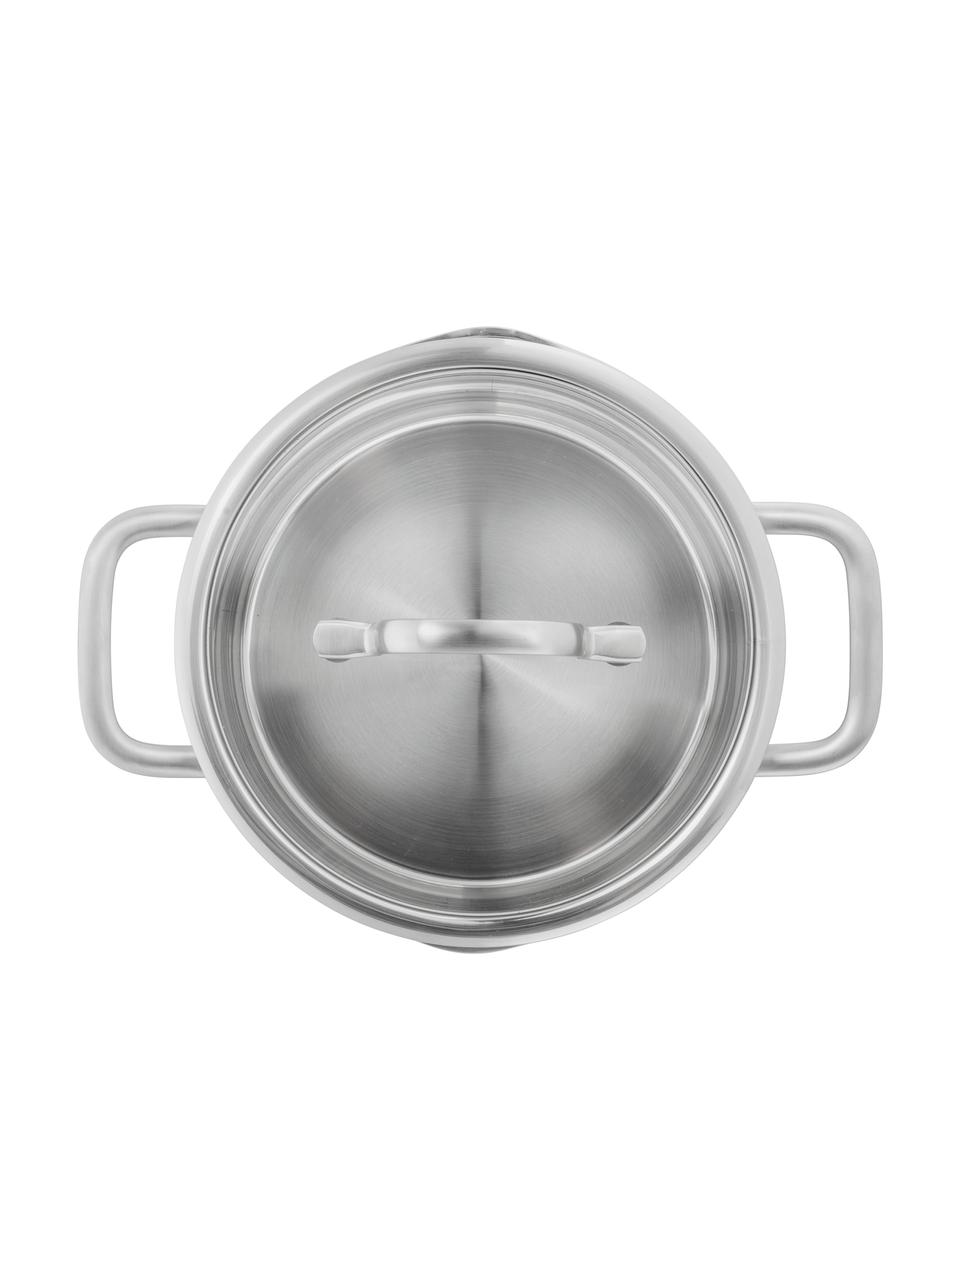 Kochtopfset TrueFlow aus Edelstahl, 4-tlg., Deckel: Glas, Edelstahl, Silberfarben, Set mit verschiedenen Größen